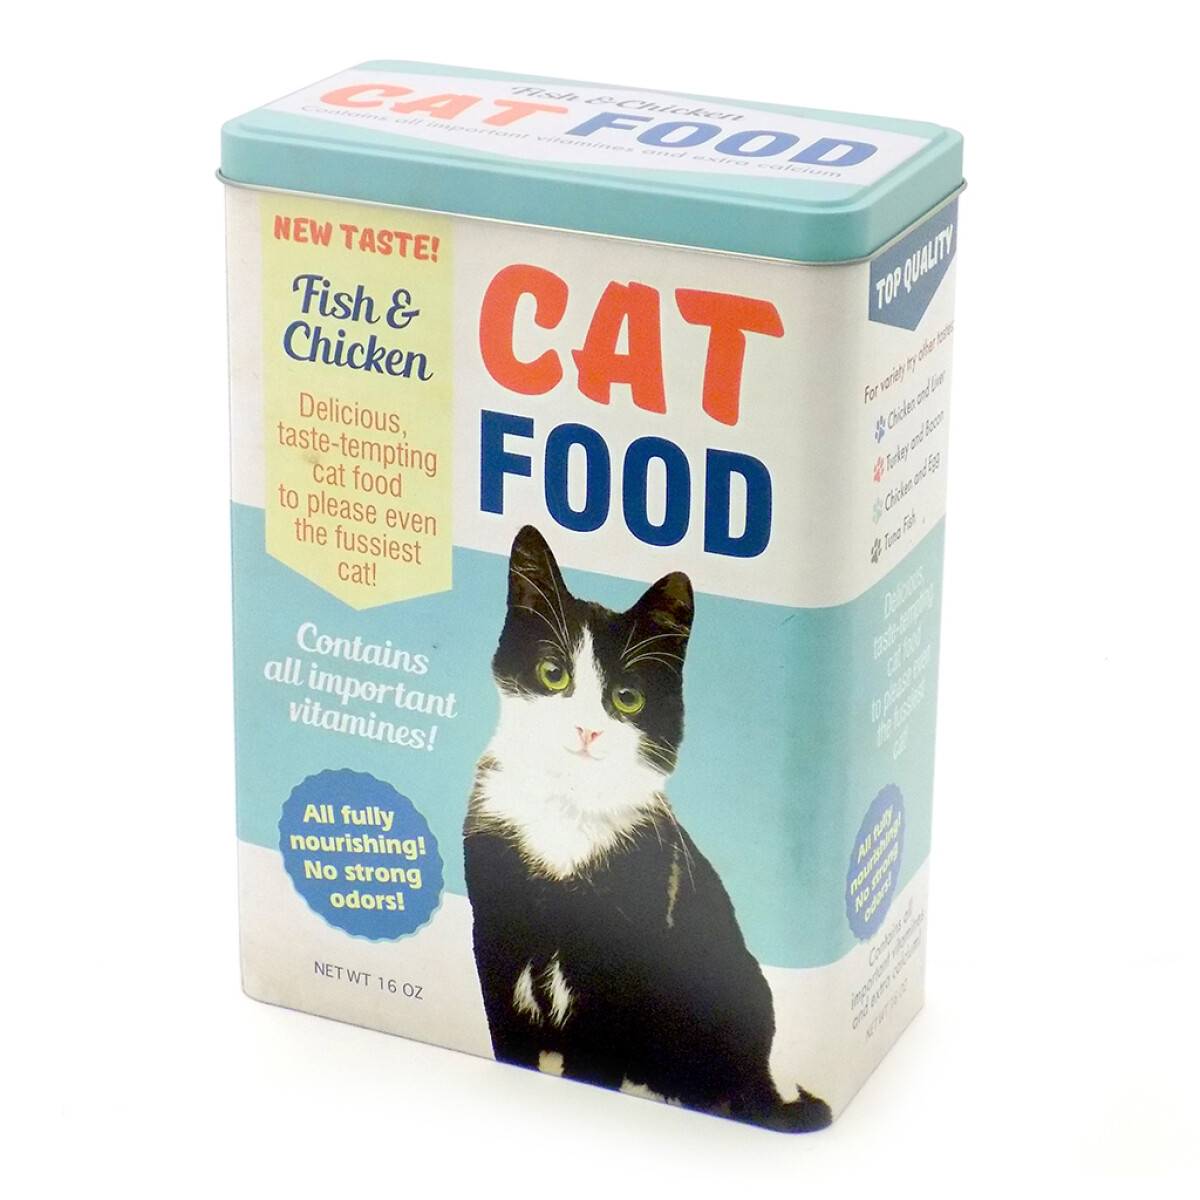 LATA RECTANGULAR VERTICAL CAT FOOD 18X10X24.5H CM 